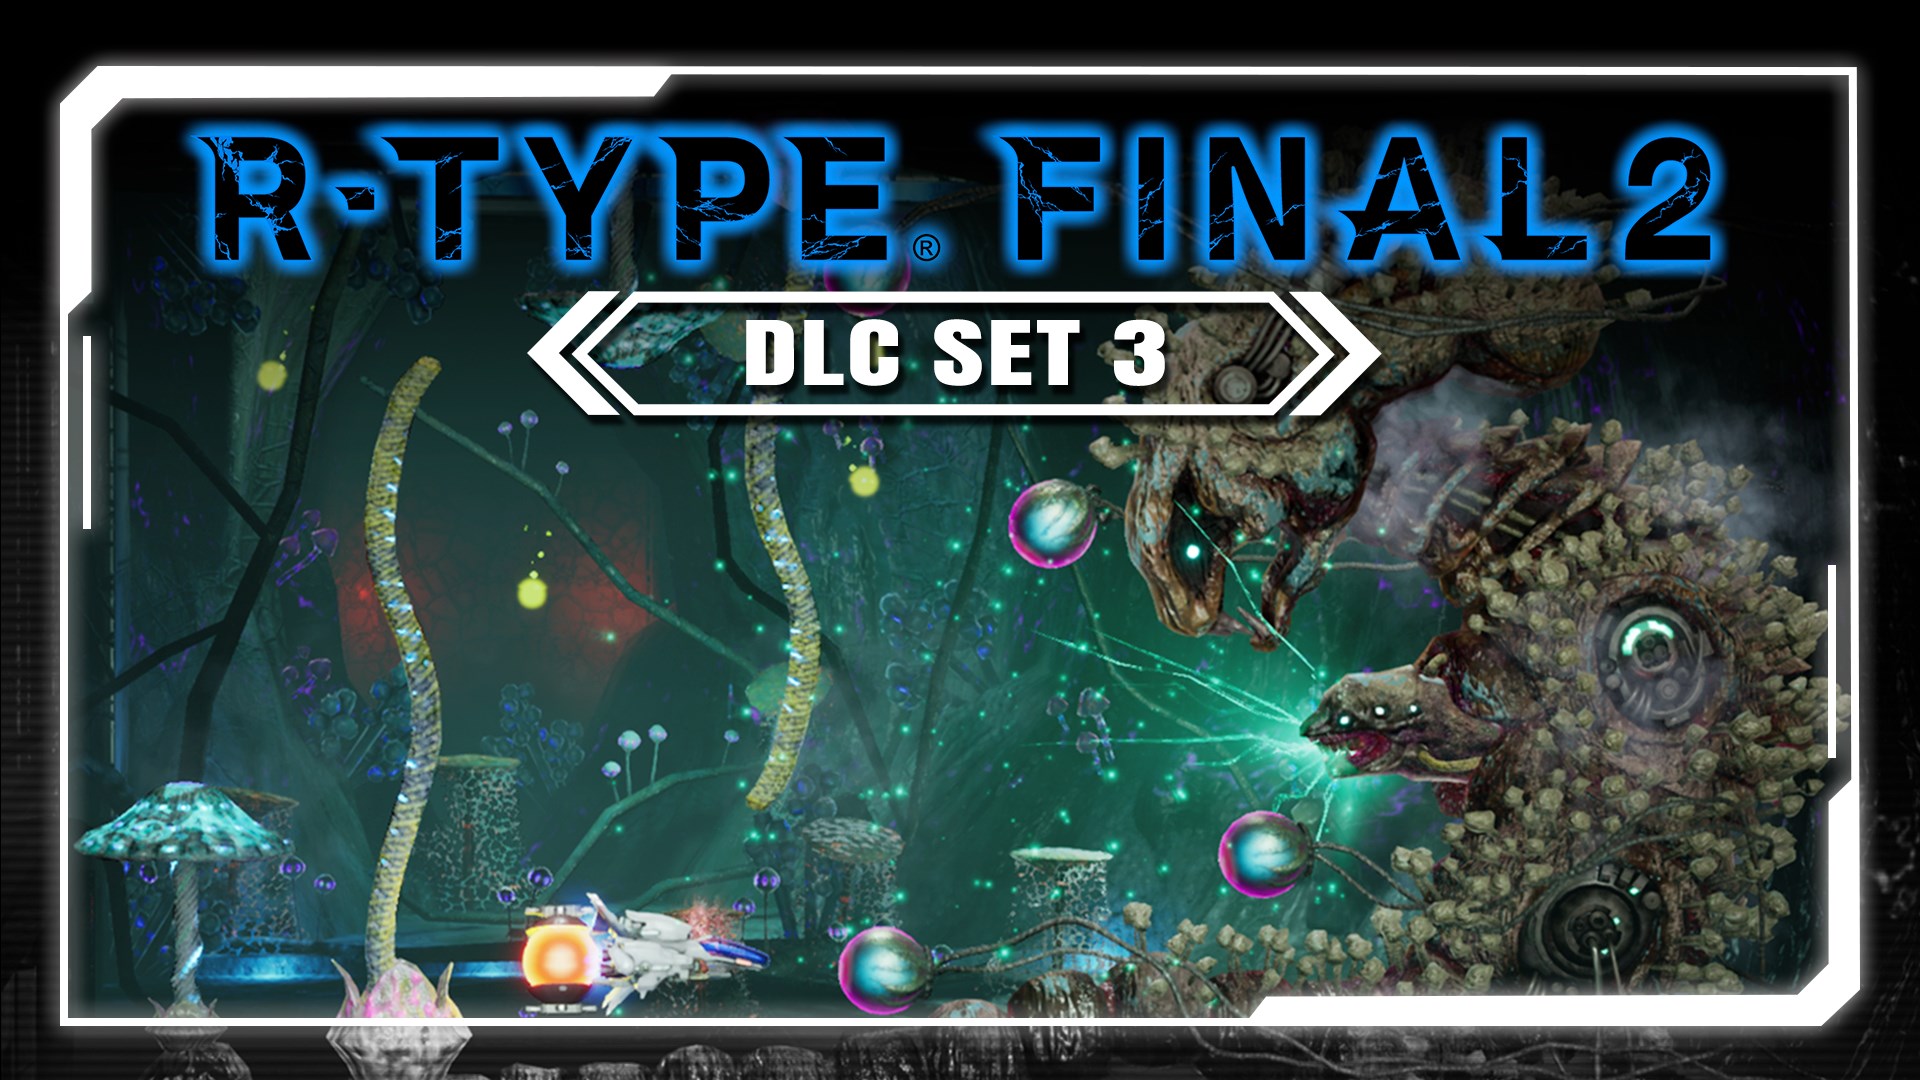 R-Type Final 2 PC: DLC Set 3